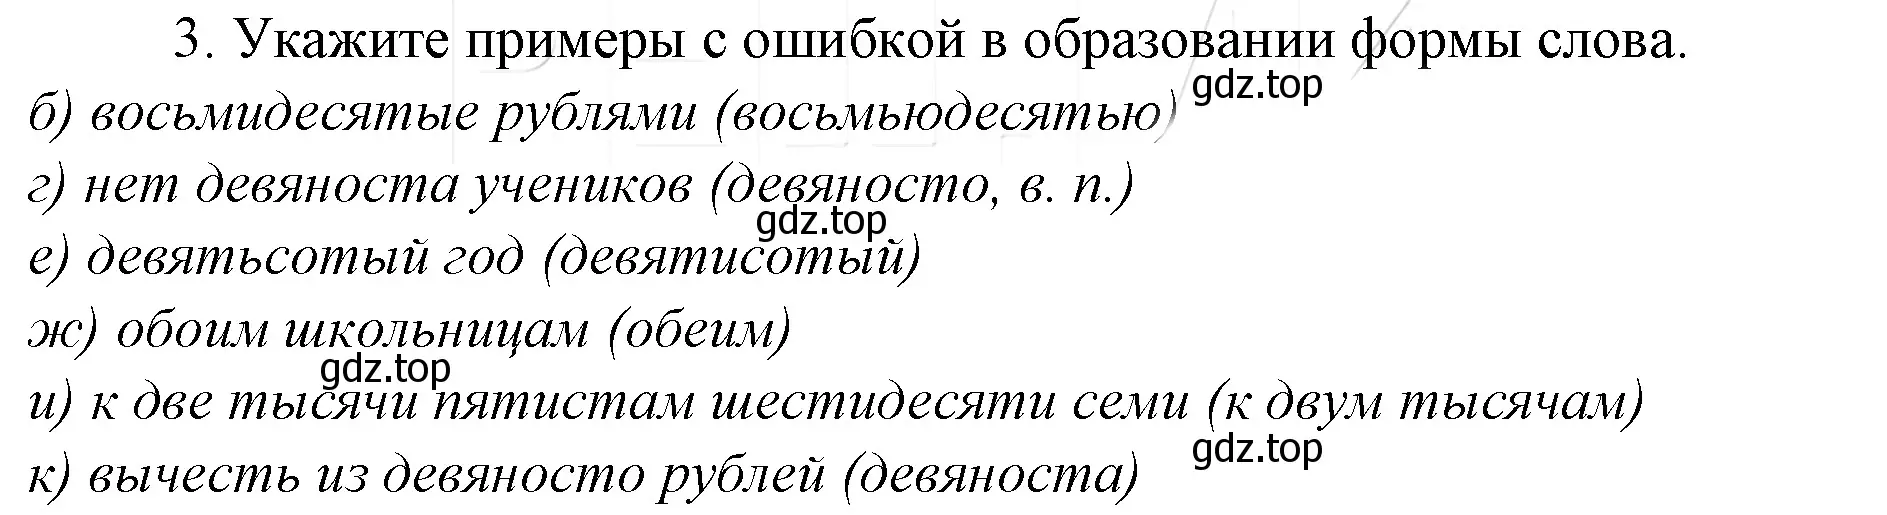 Решение 4. номер 3 (страница 234) гдз по русскому языку 10-11 класс Гольцова, Шамшин, учебник 1 часть